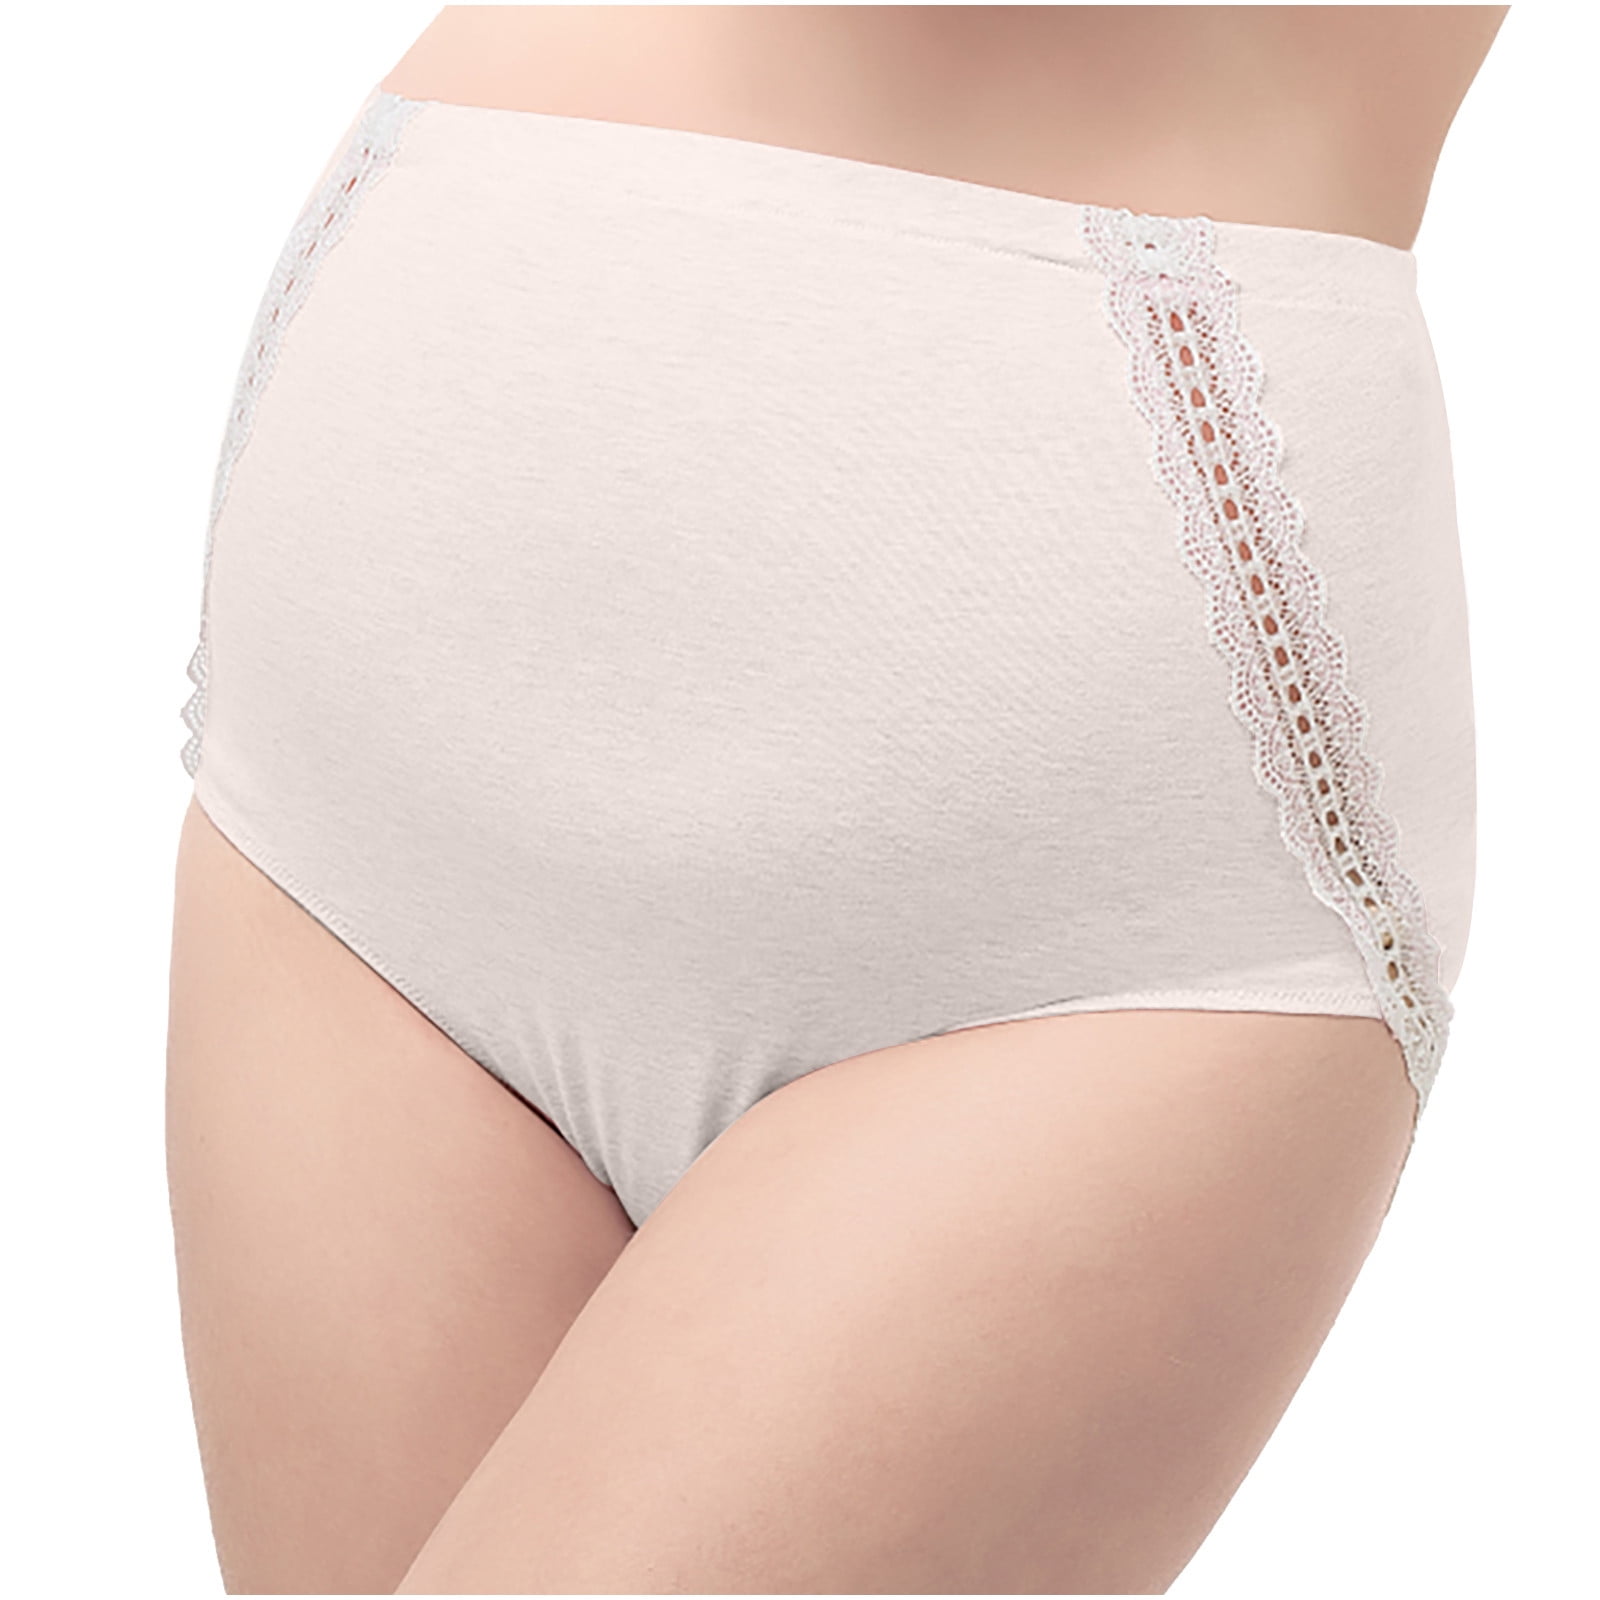 HUPOM Knix Underwear Panties For Women High Waist Activewear Tie